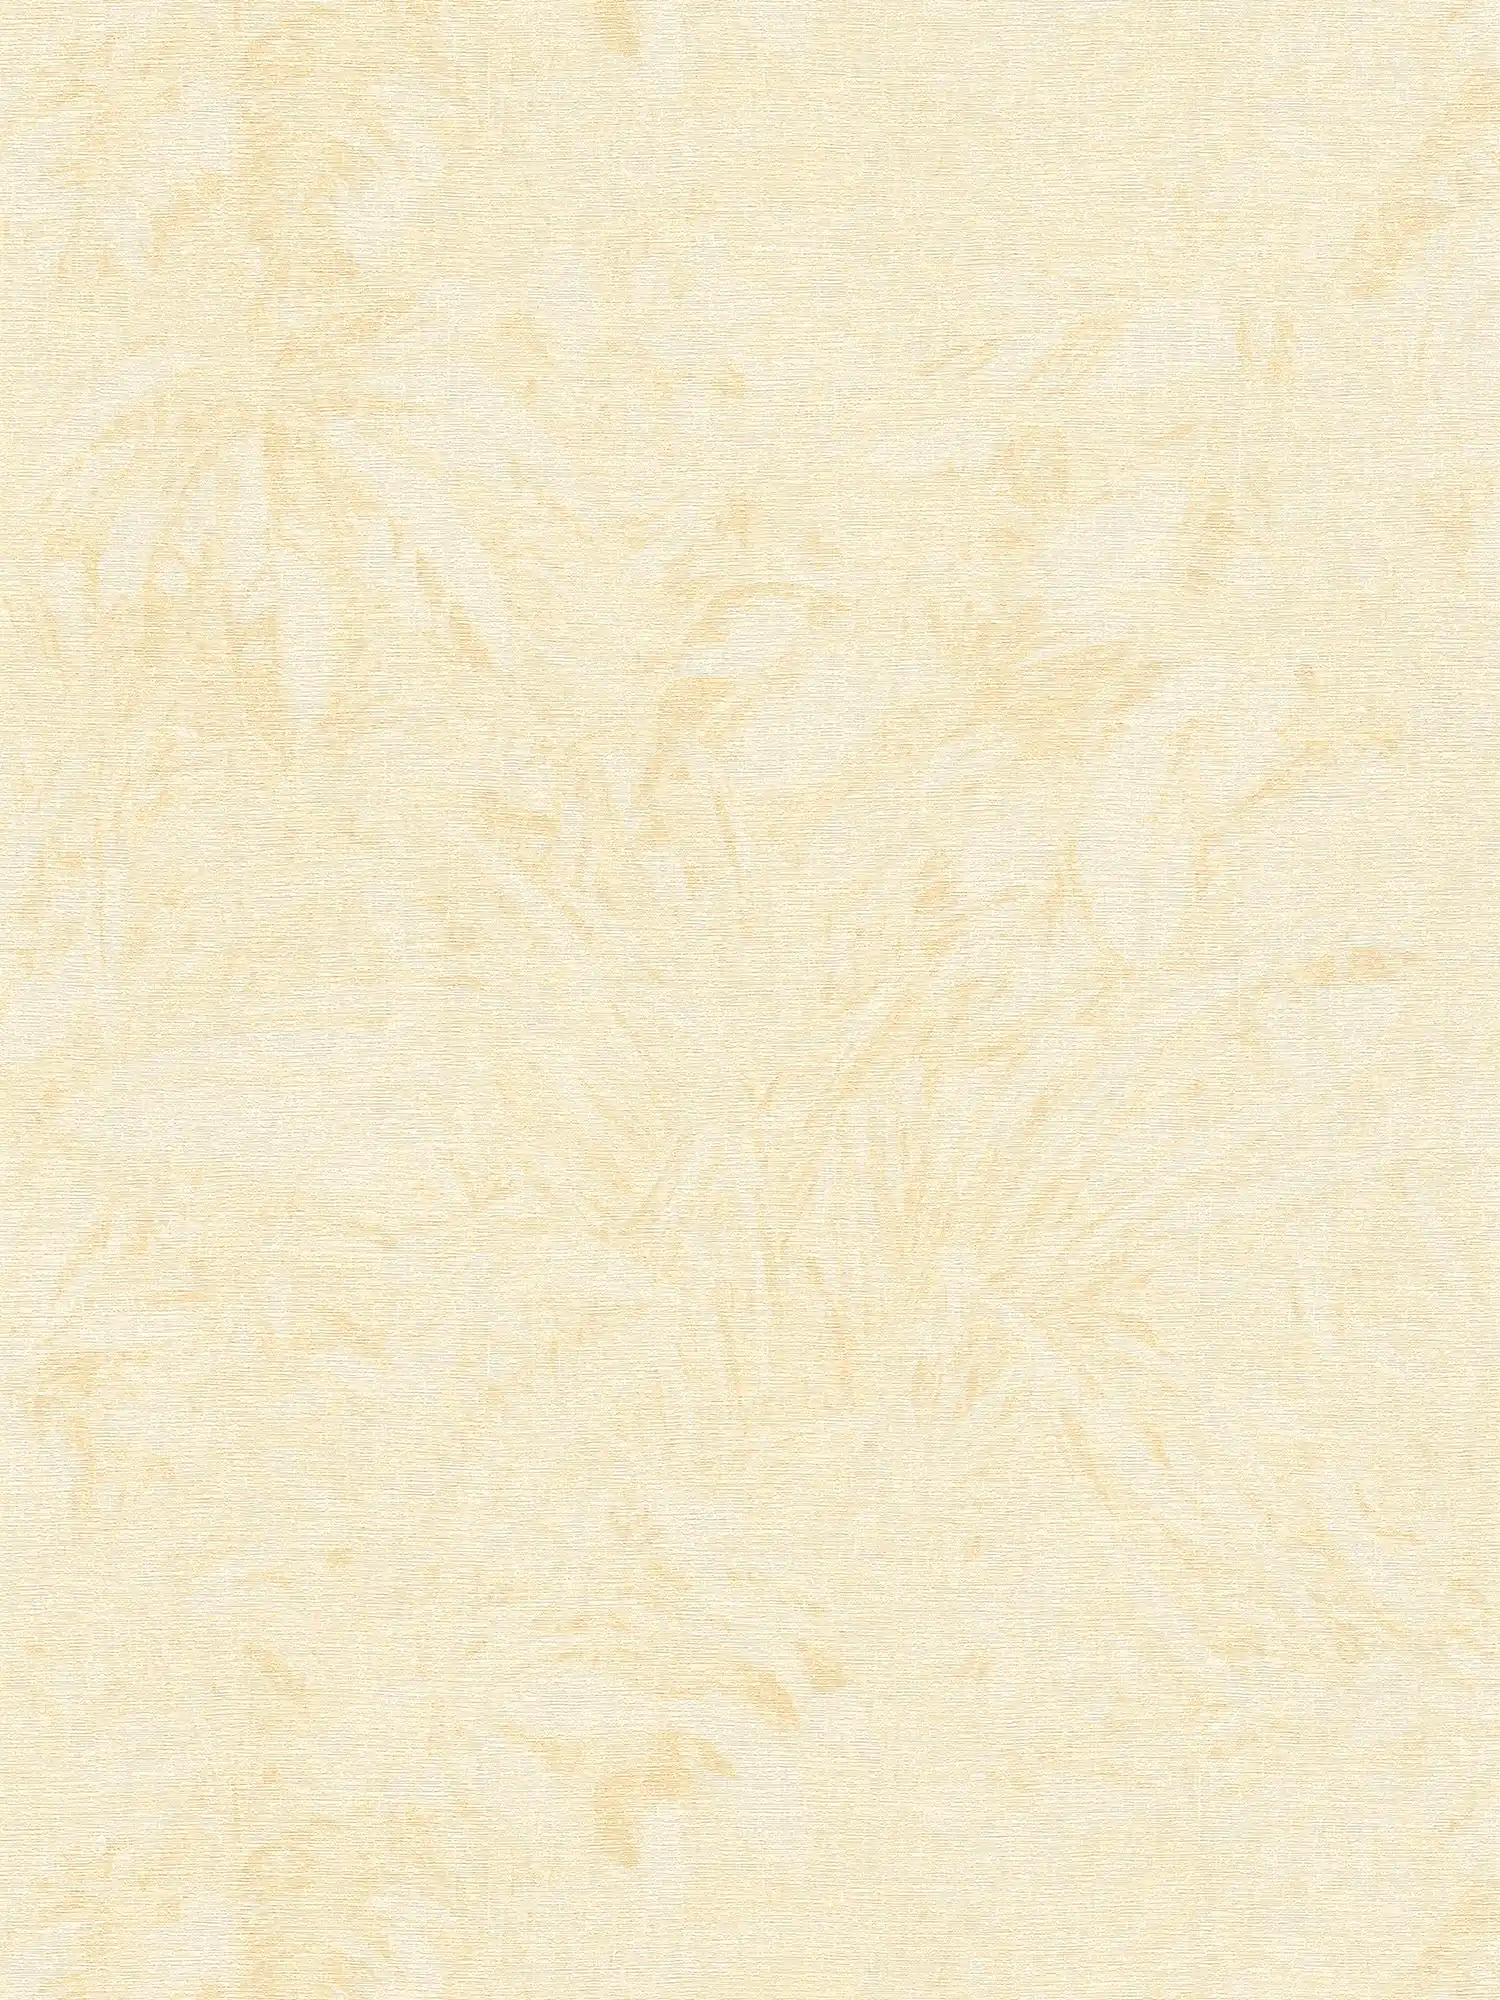 Carta da parati con motivo a foglie sbiadite in stile giungla - beige, giallo, oro
